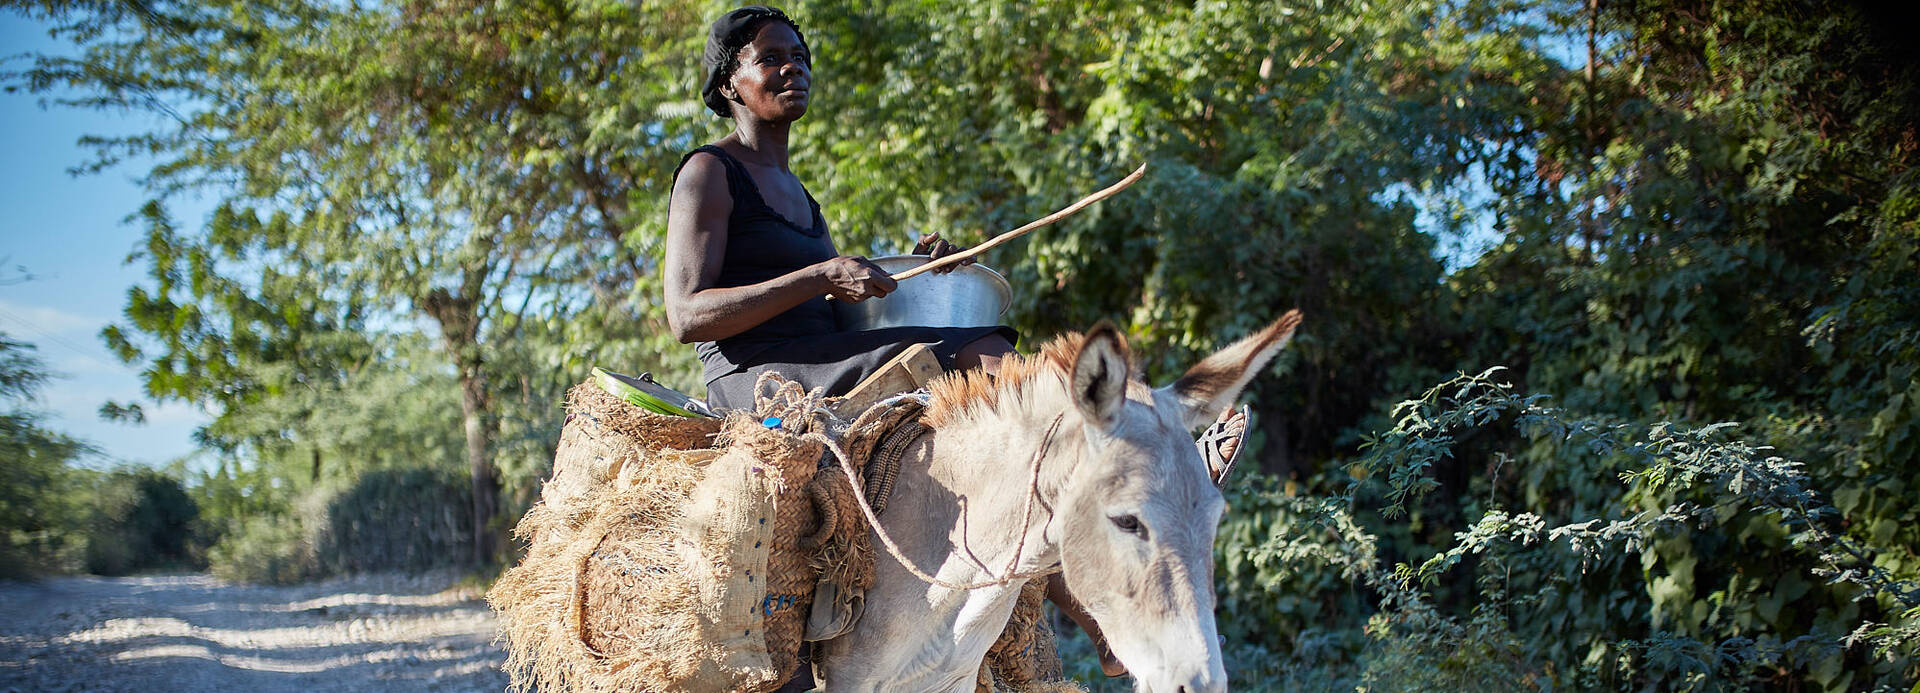 Frau reitet auf einem Esel in Haiti.